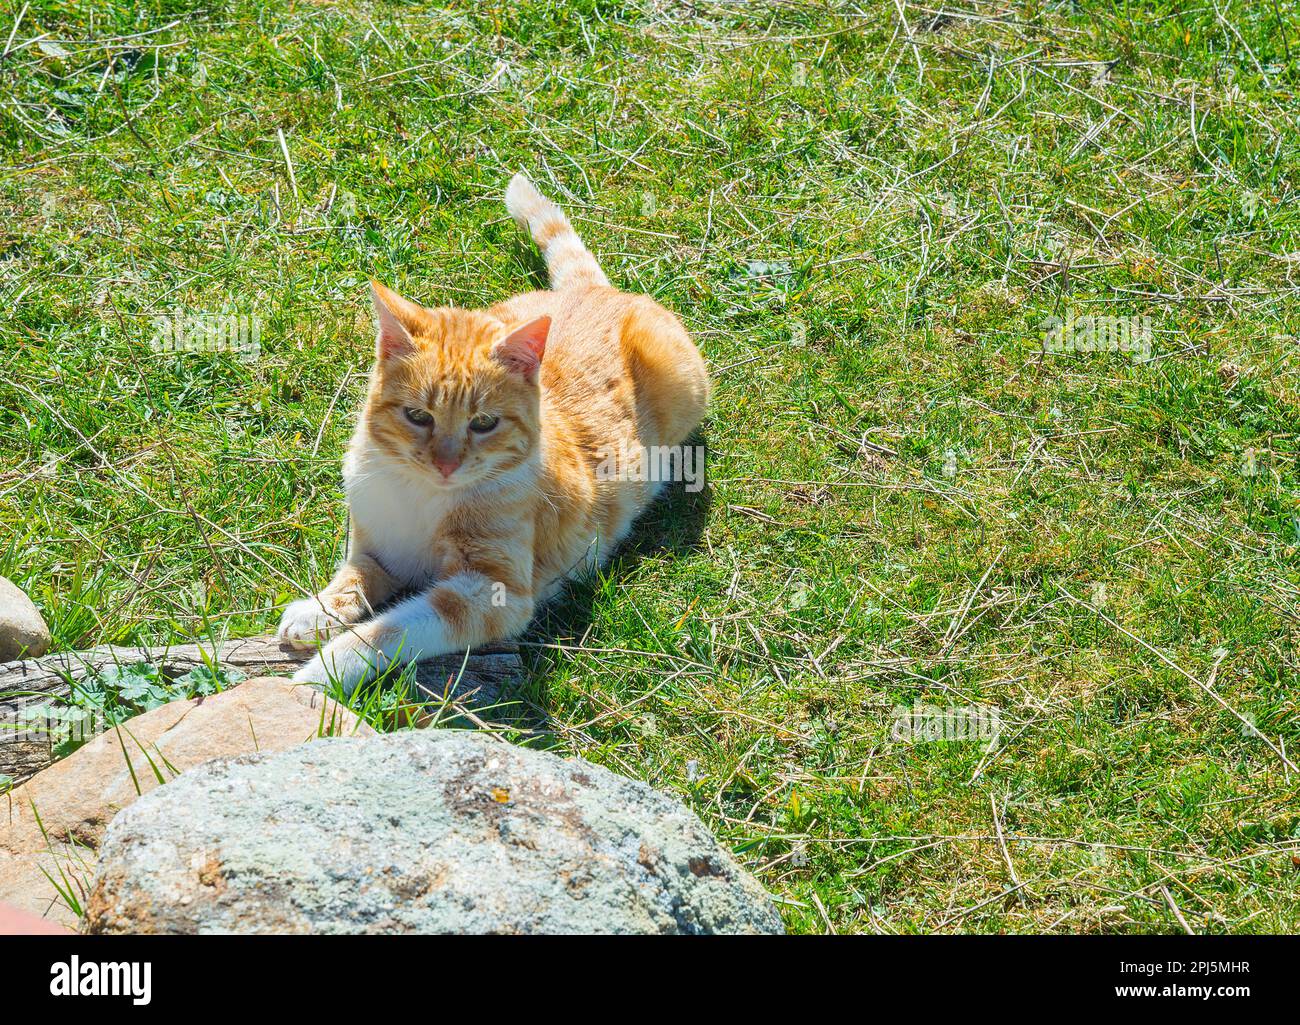 Tabby and white cat sunbathing. Stock Photo